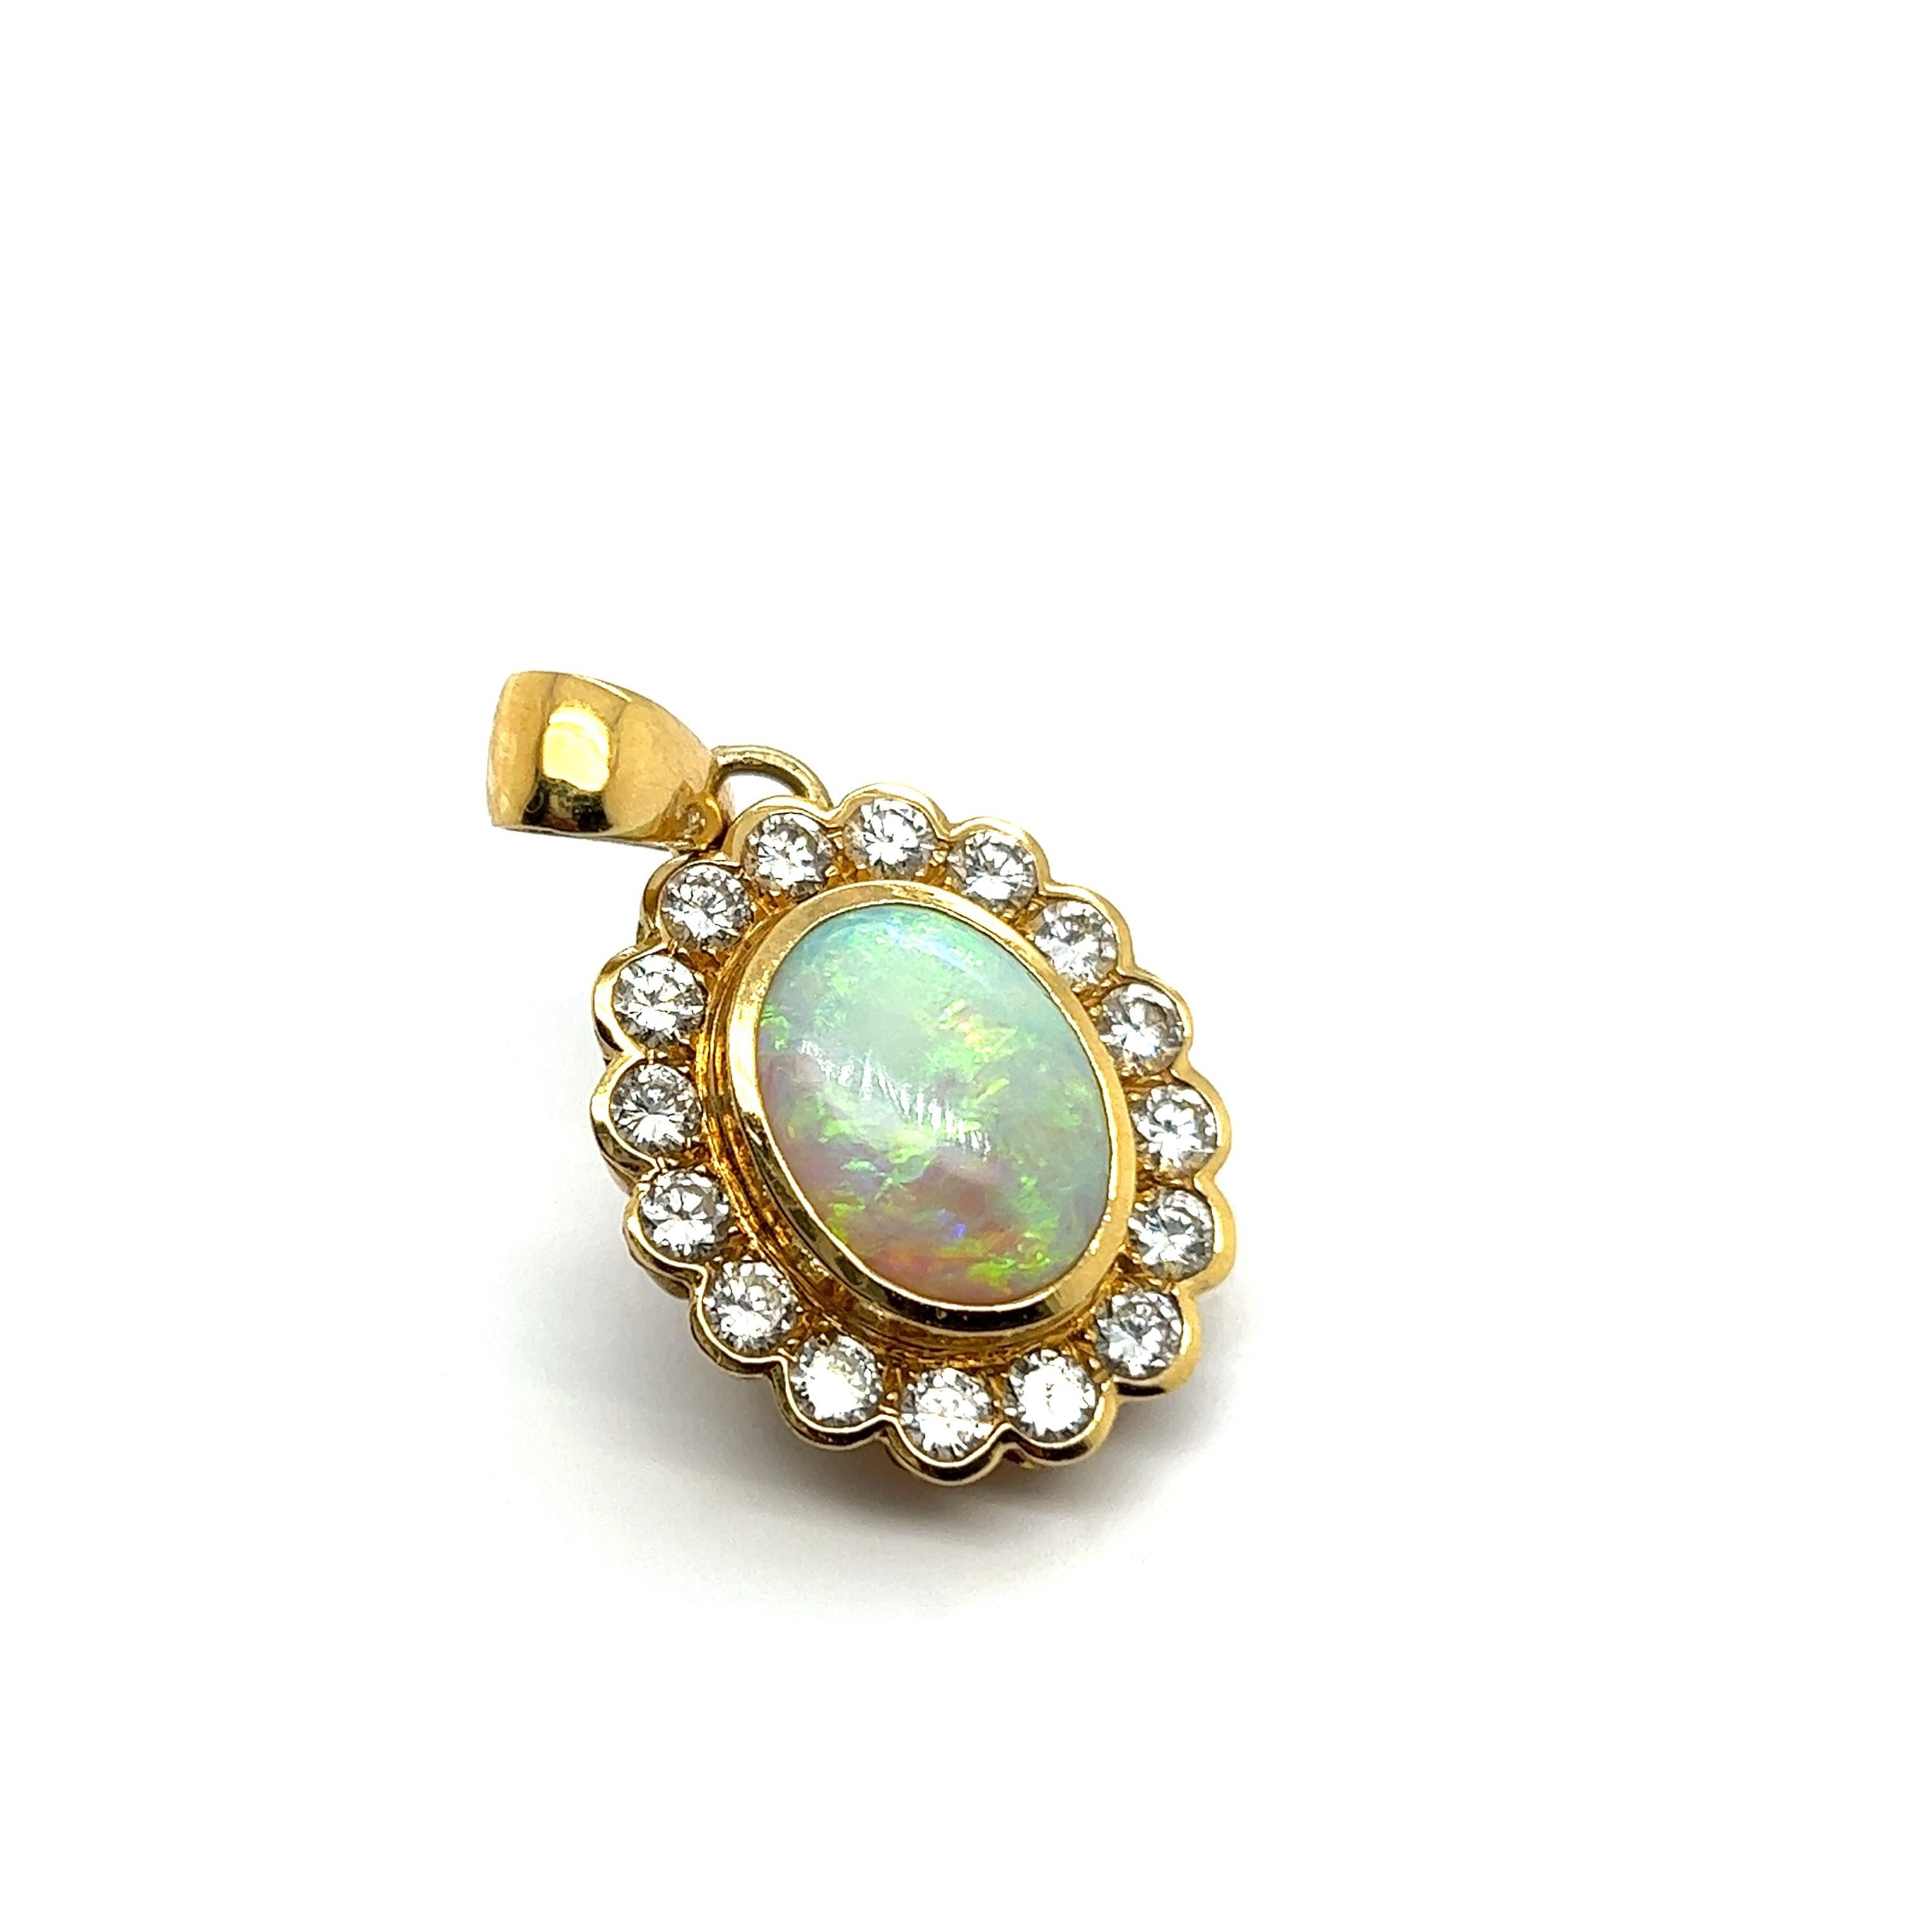 Présenter un pendentif en opale blanche en or jaune 18 carats est un bijou luxueux et élégant. 

L'opale, dont le corps est d'un blanc laiteux, met en évidence un jeu de couleurs hypnotique avec des éclats vibrants d'or, de vert, de bleu et de